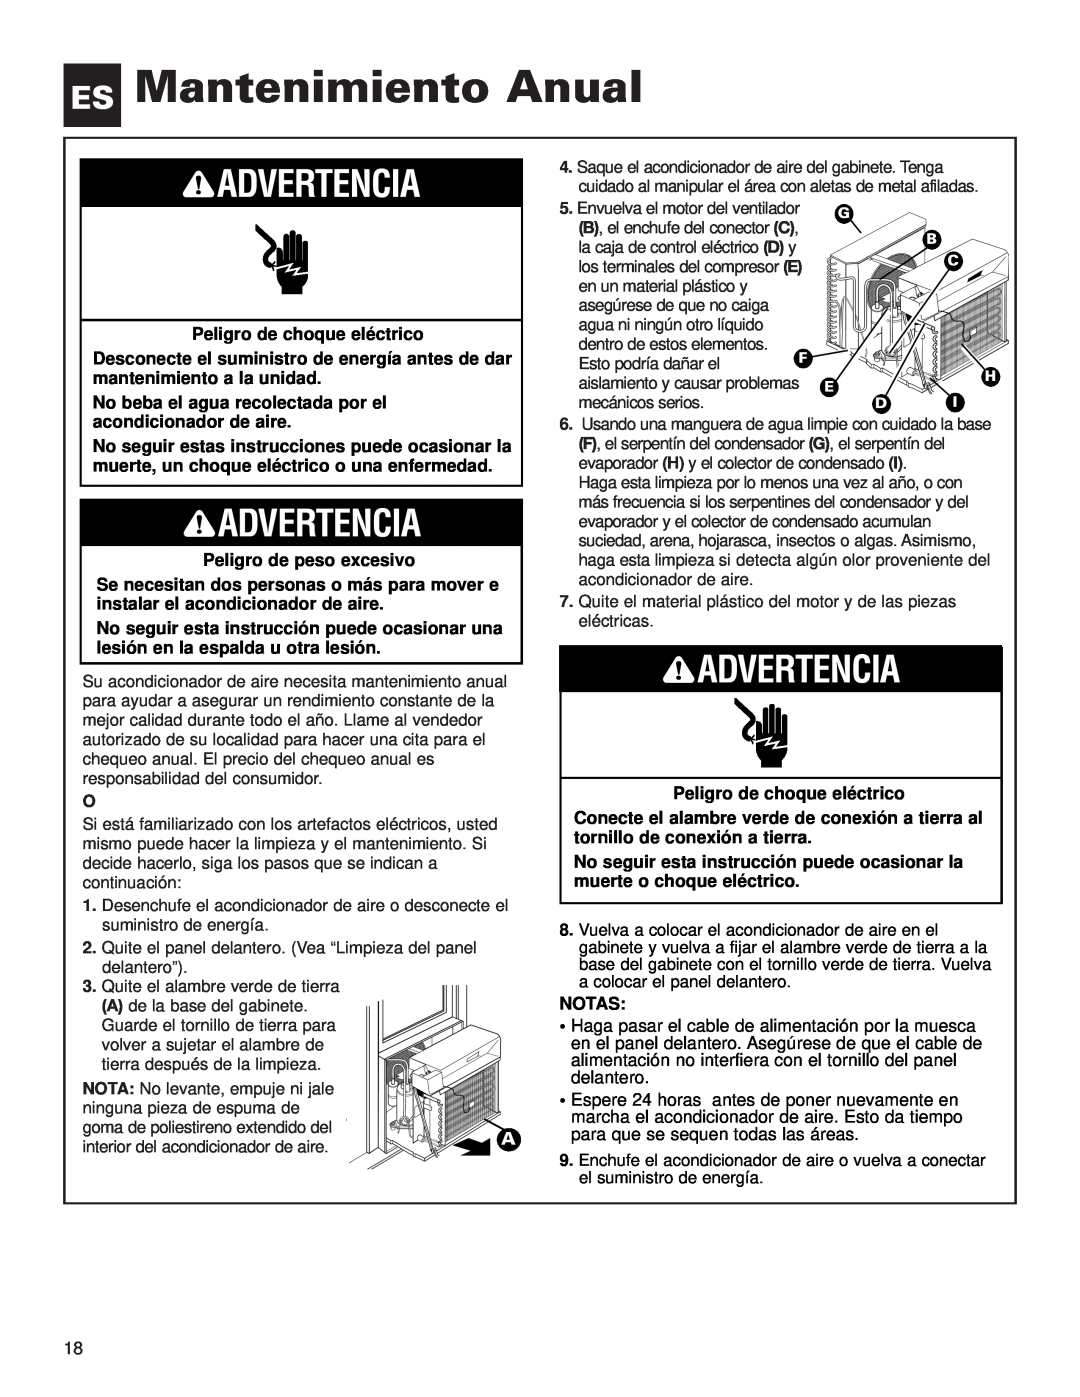 Whirlpool ACE184XL0 manual ES Mantenimiento Anual, Advertencia 